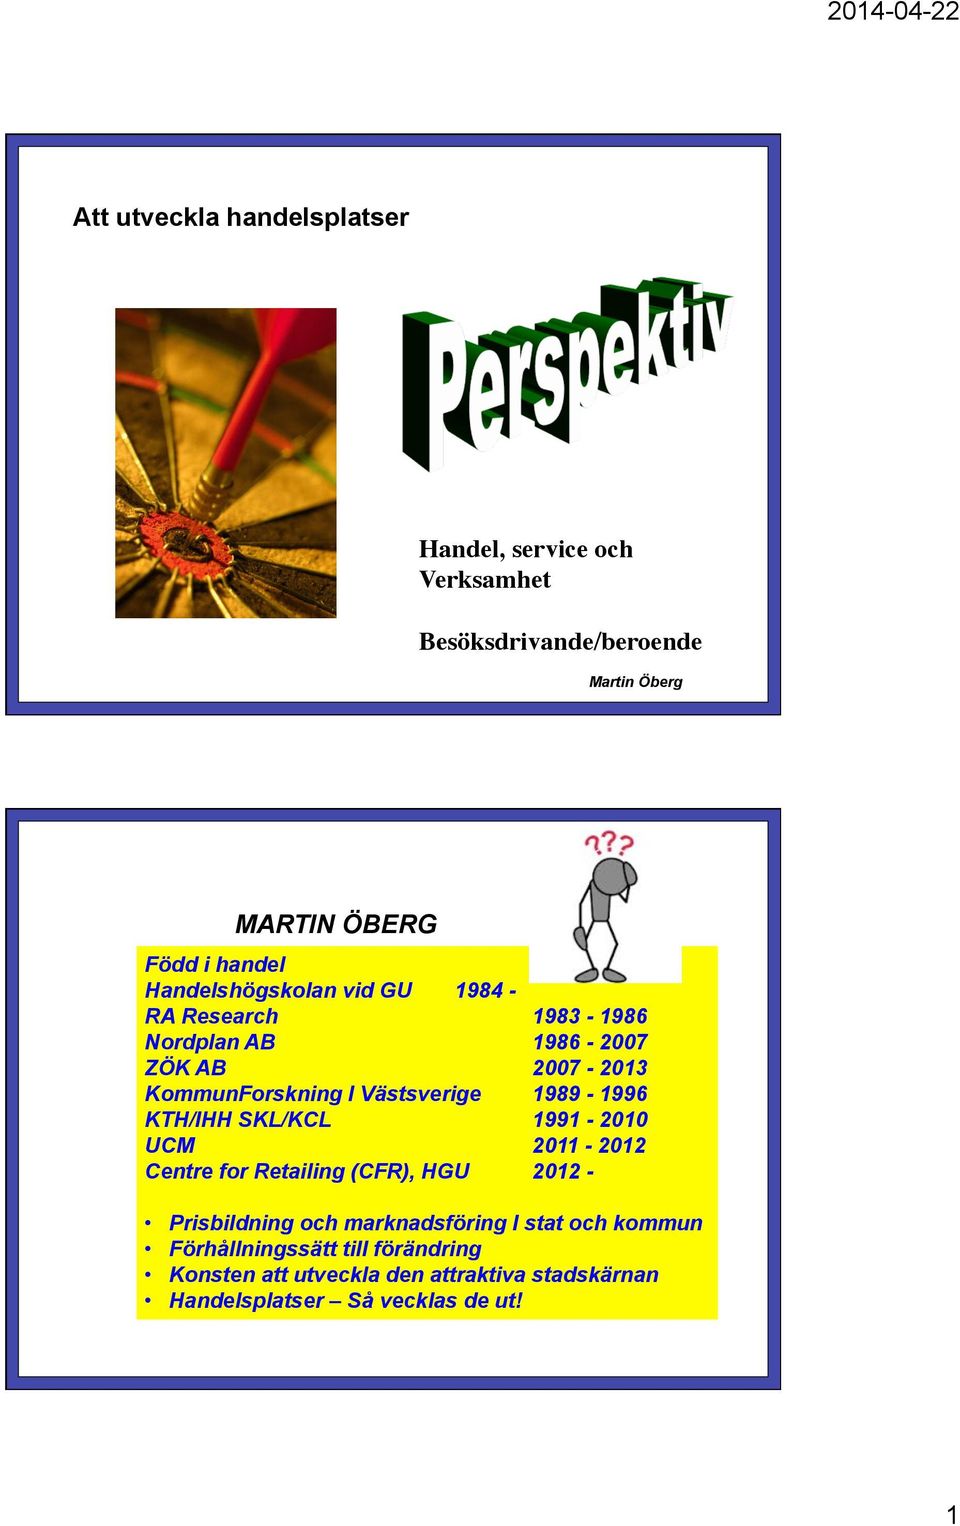 1989-1996 KTH/IHH SKL/KCL 1991-2010 UCM 2011-2012 Centre for Retailing (CFR), HGU 2012 - Prisbildning och marknadsföring